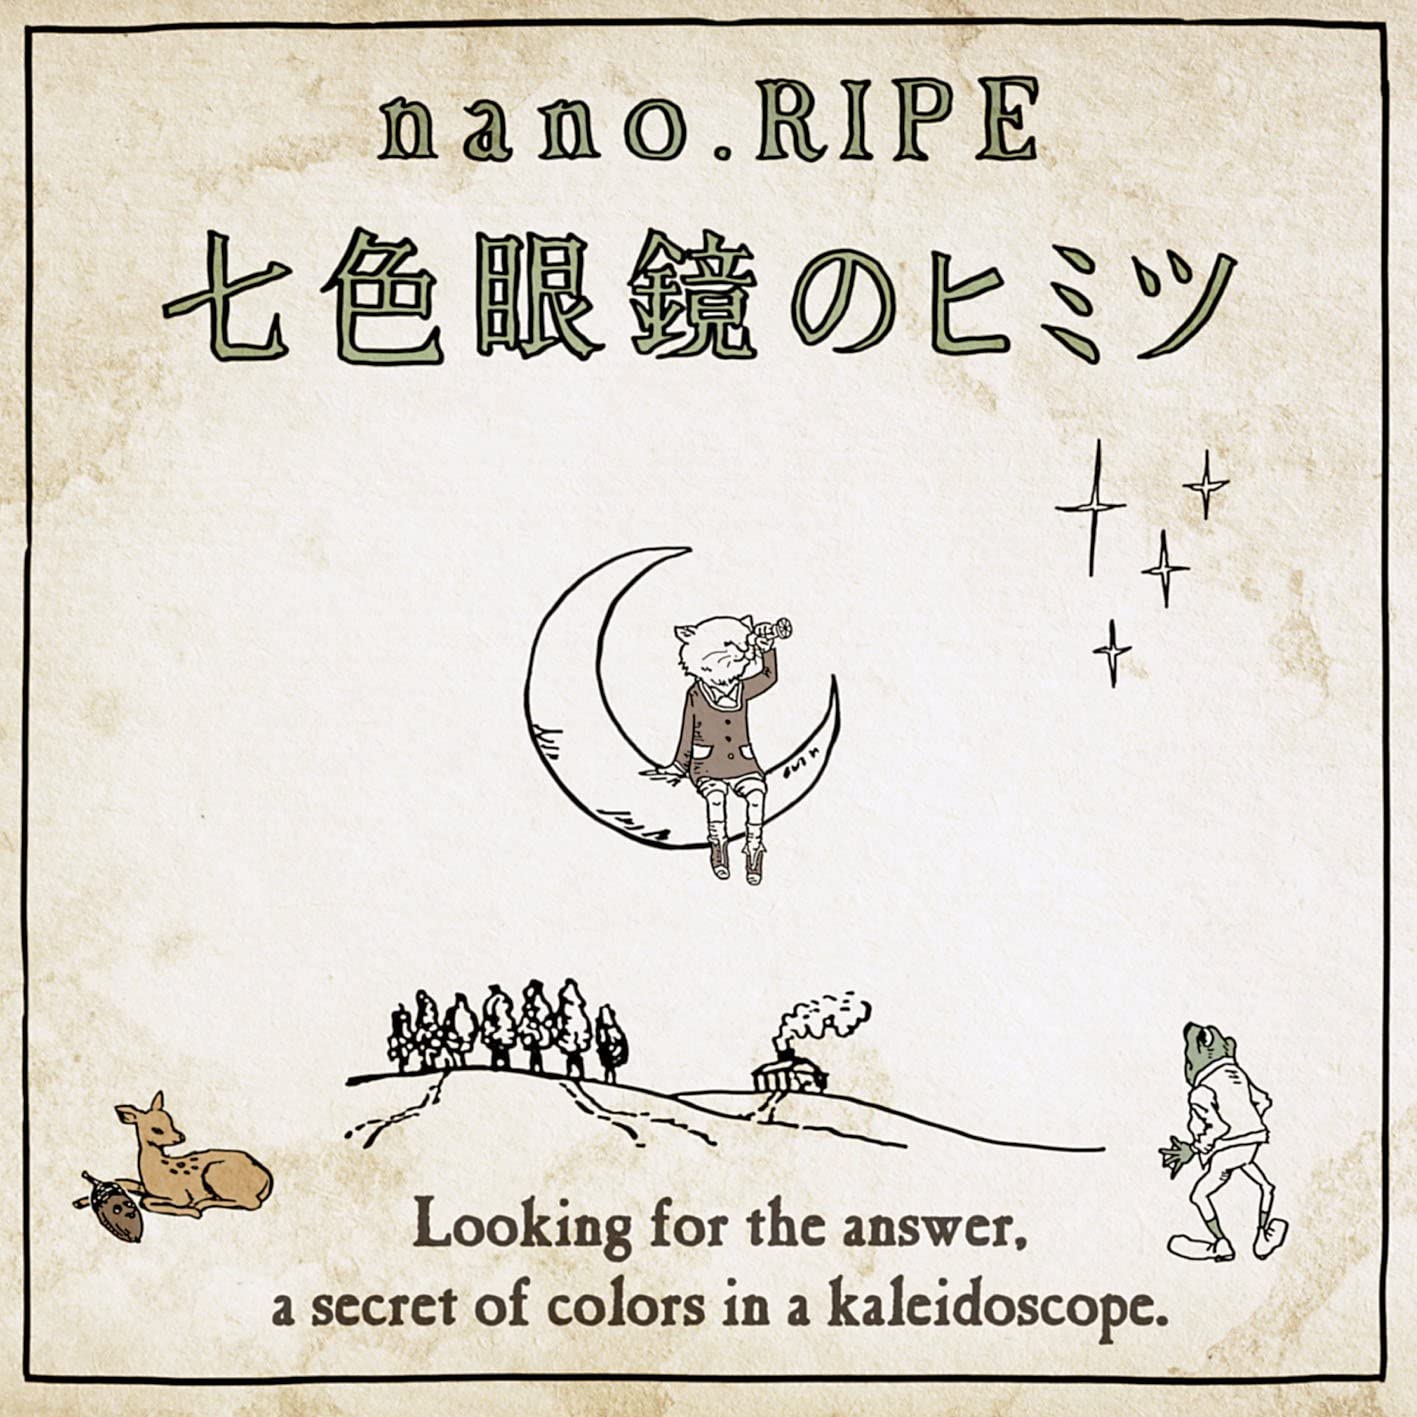 【中古】[500] CD nano.RIPE 七色眼鏡のヒミツ 1枚組 ナノライプ こたえあわせ 新品ケース交換 送料無料 LACA-15481